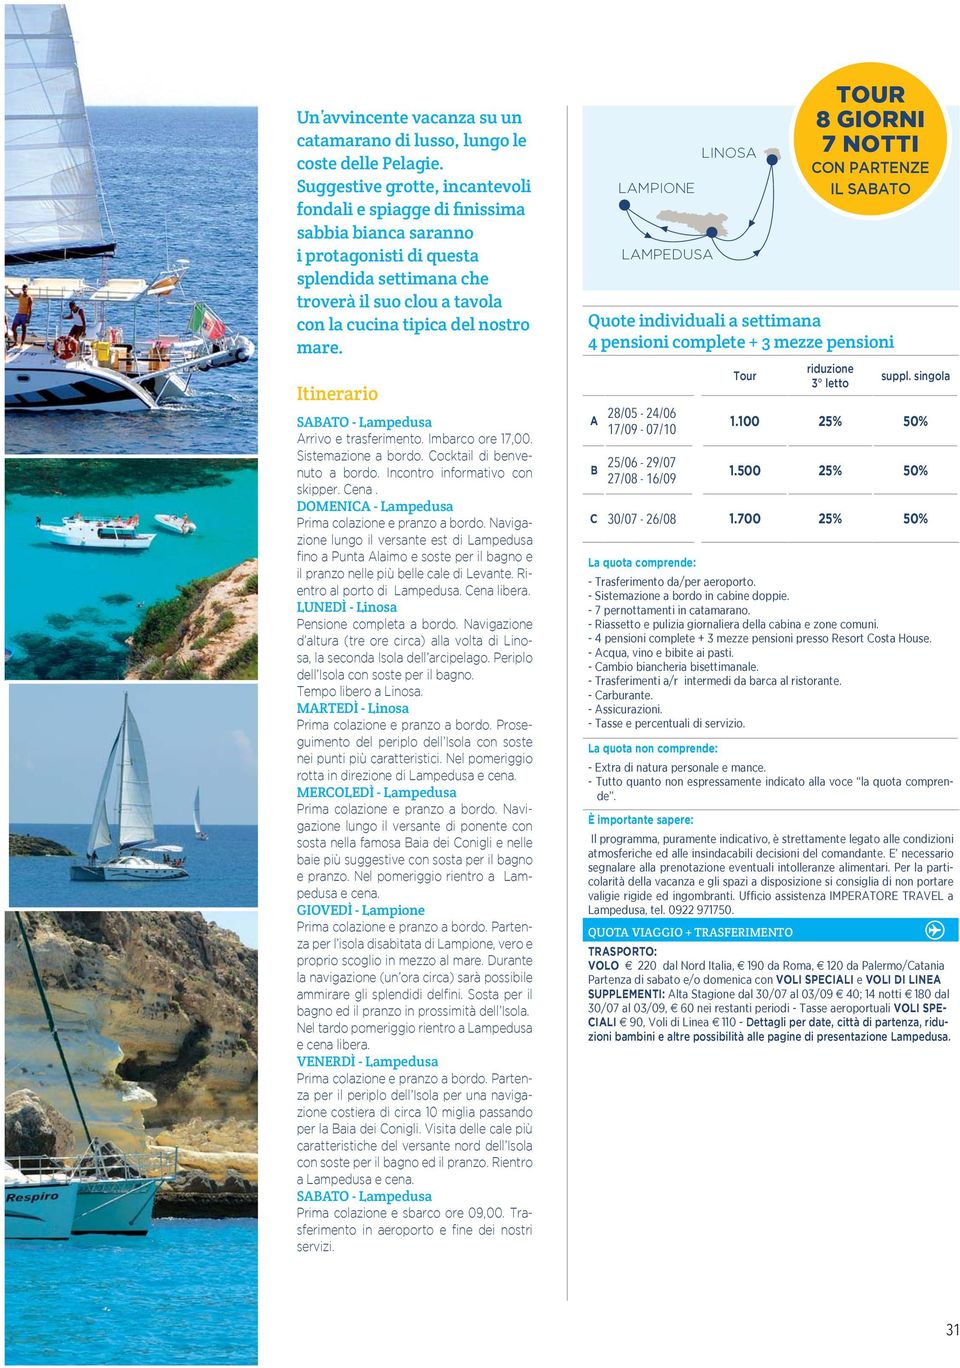 Itinerario SABATO - Lampedusa Arrivo e trasferimento. Imbarco ore 17,00. Sistemazione a bordo. Cocktail di benvenuto a bordo. Incontro informativo con skipper. Cena.